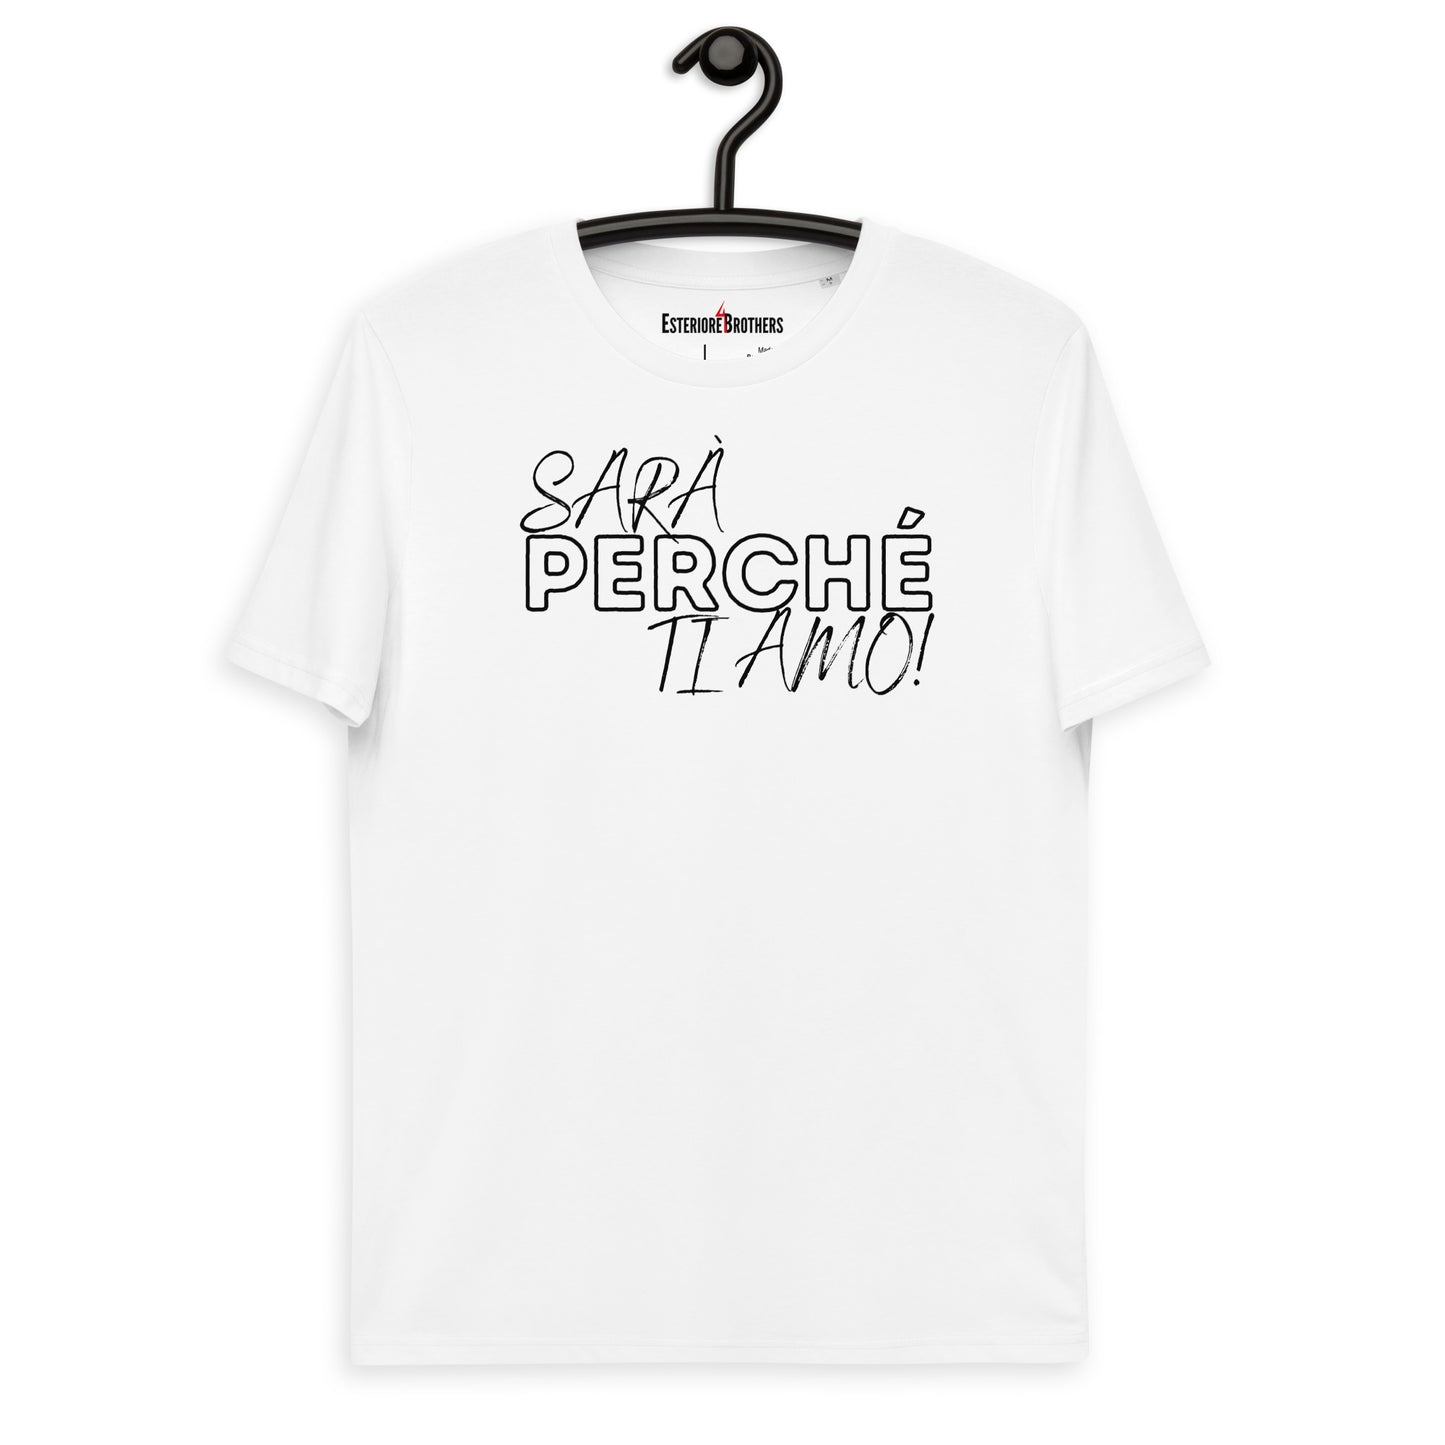 Sarà Perche Ti Amo! T-Shirt (v.1) Weiß